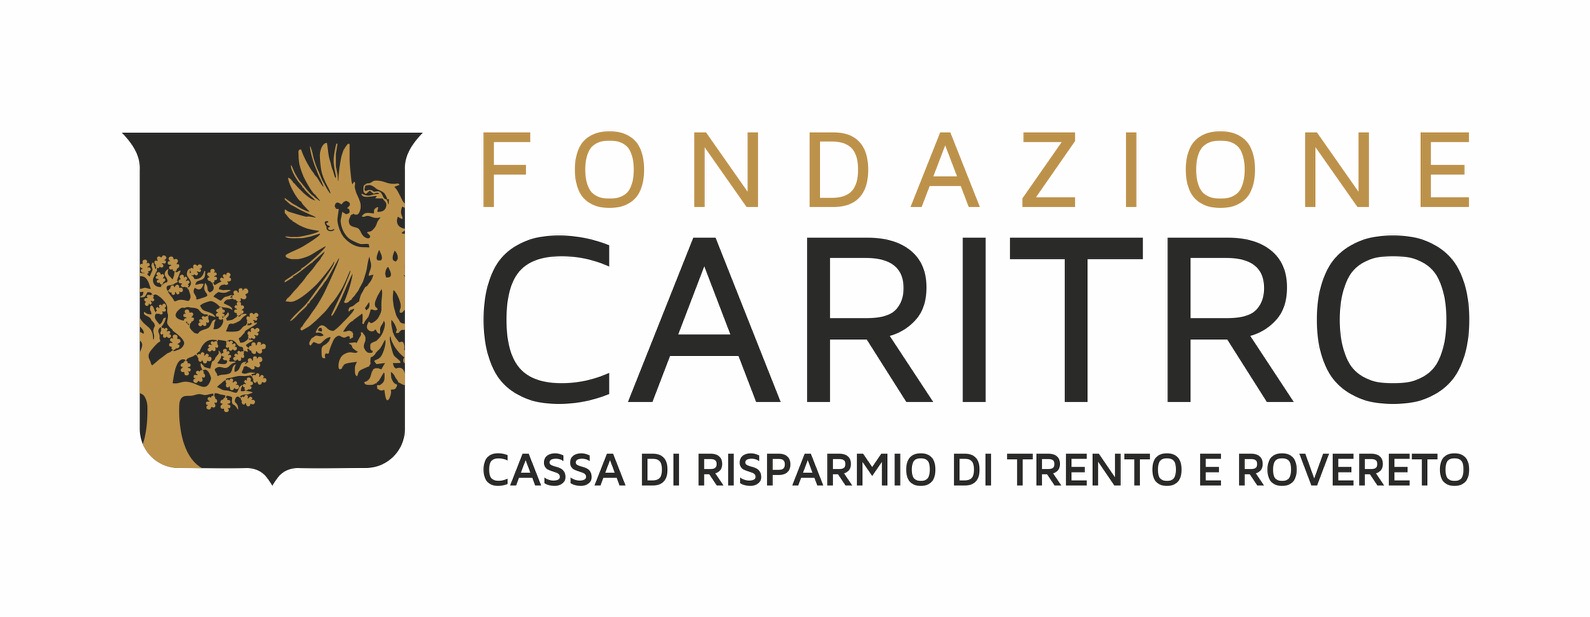 logo caritro 2018